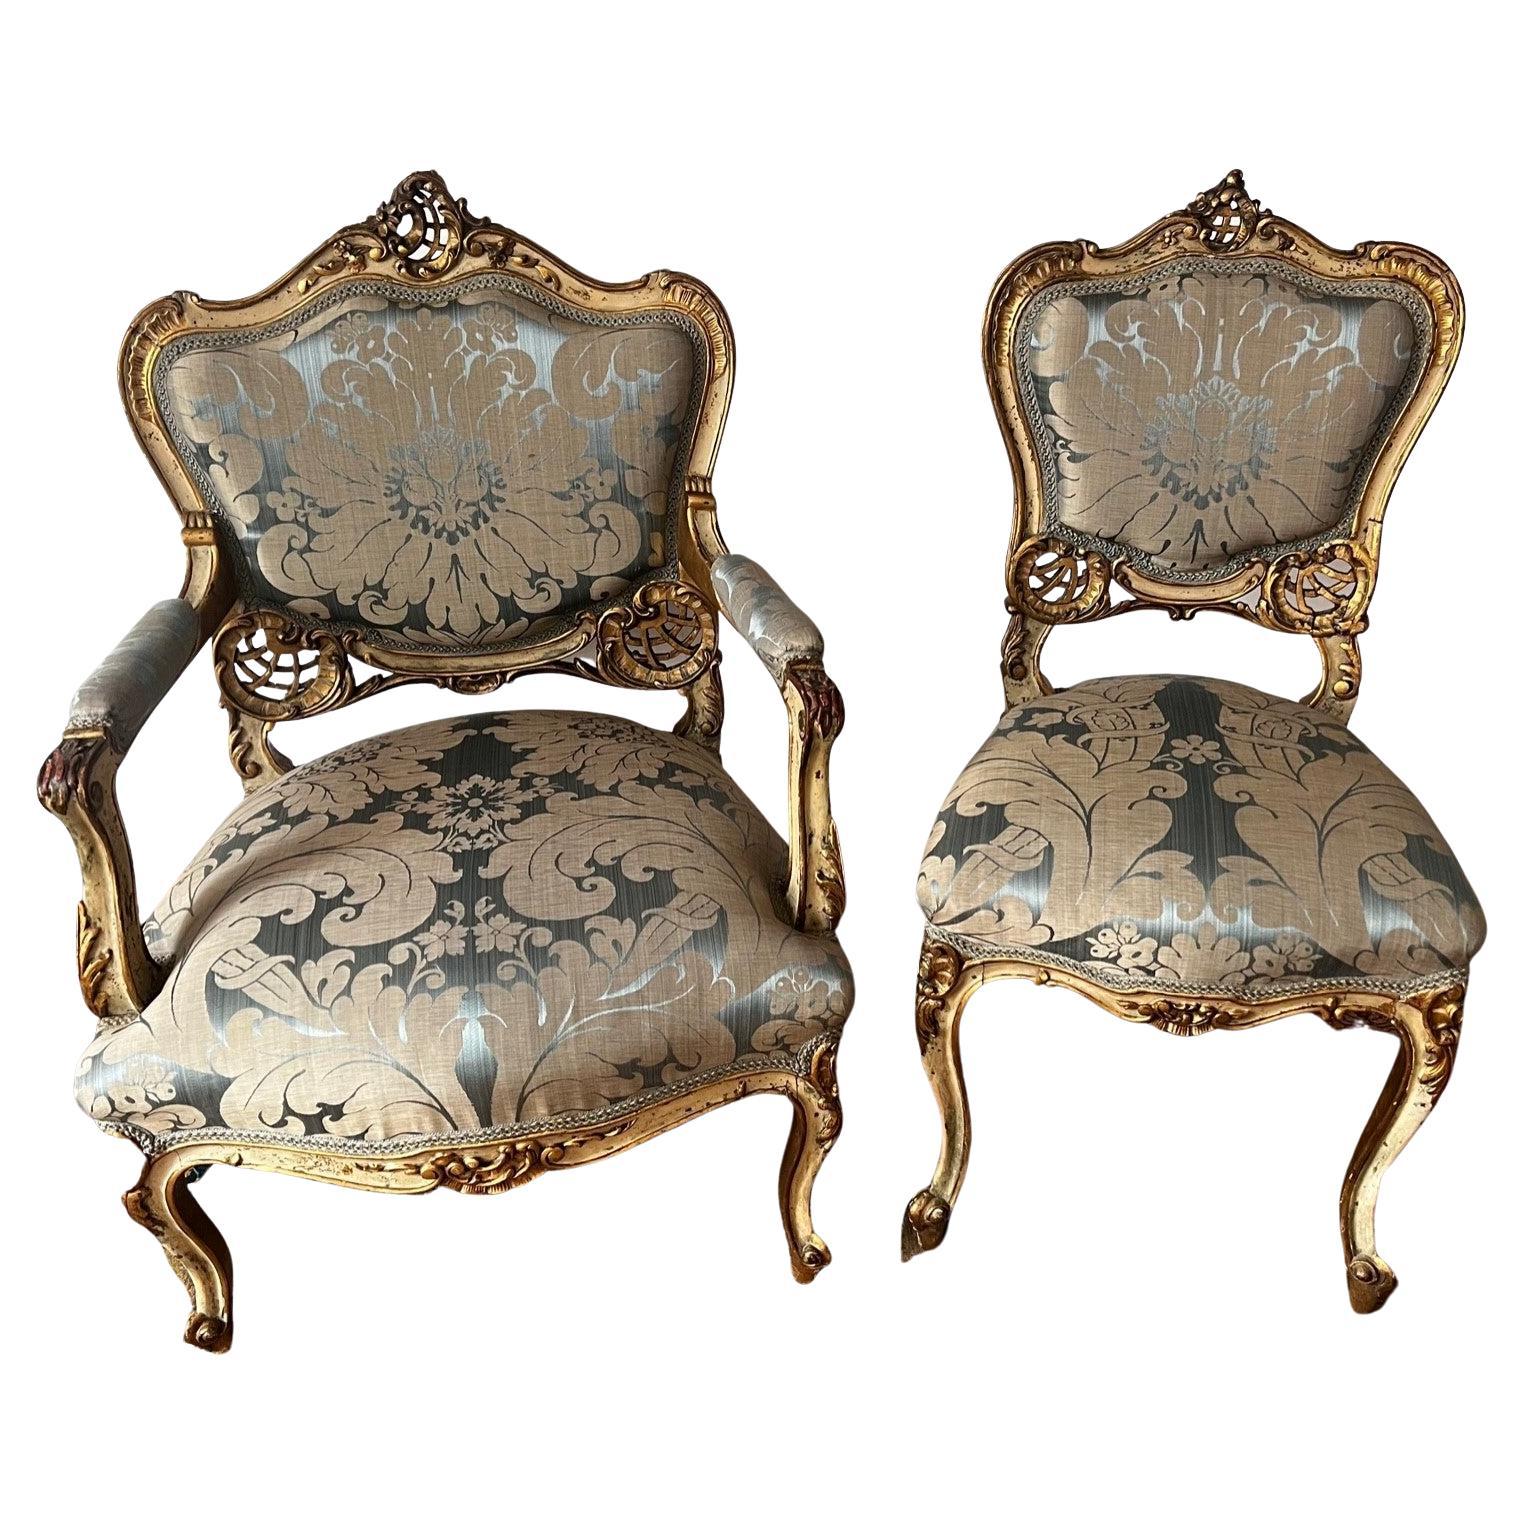 Paar originale vergoldete Louis-XV-Salonstühle aus dem 18. Jahrhundert